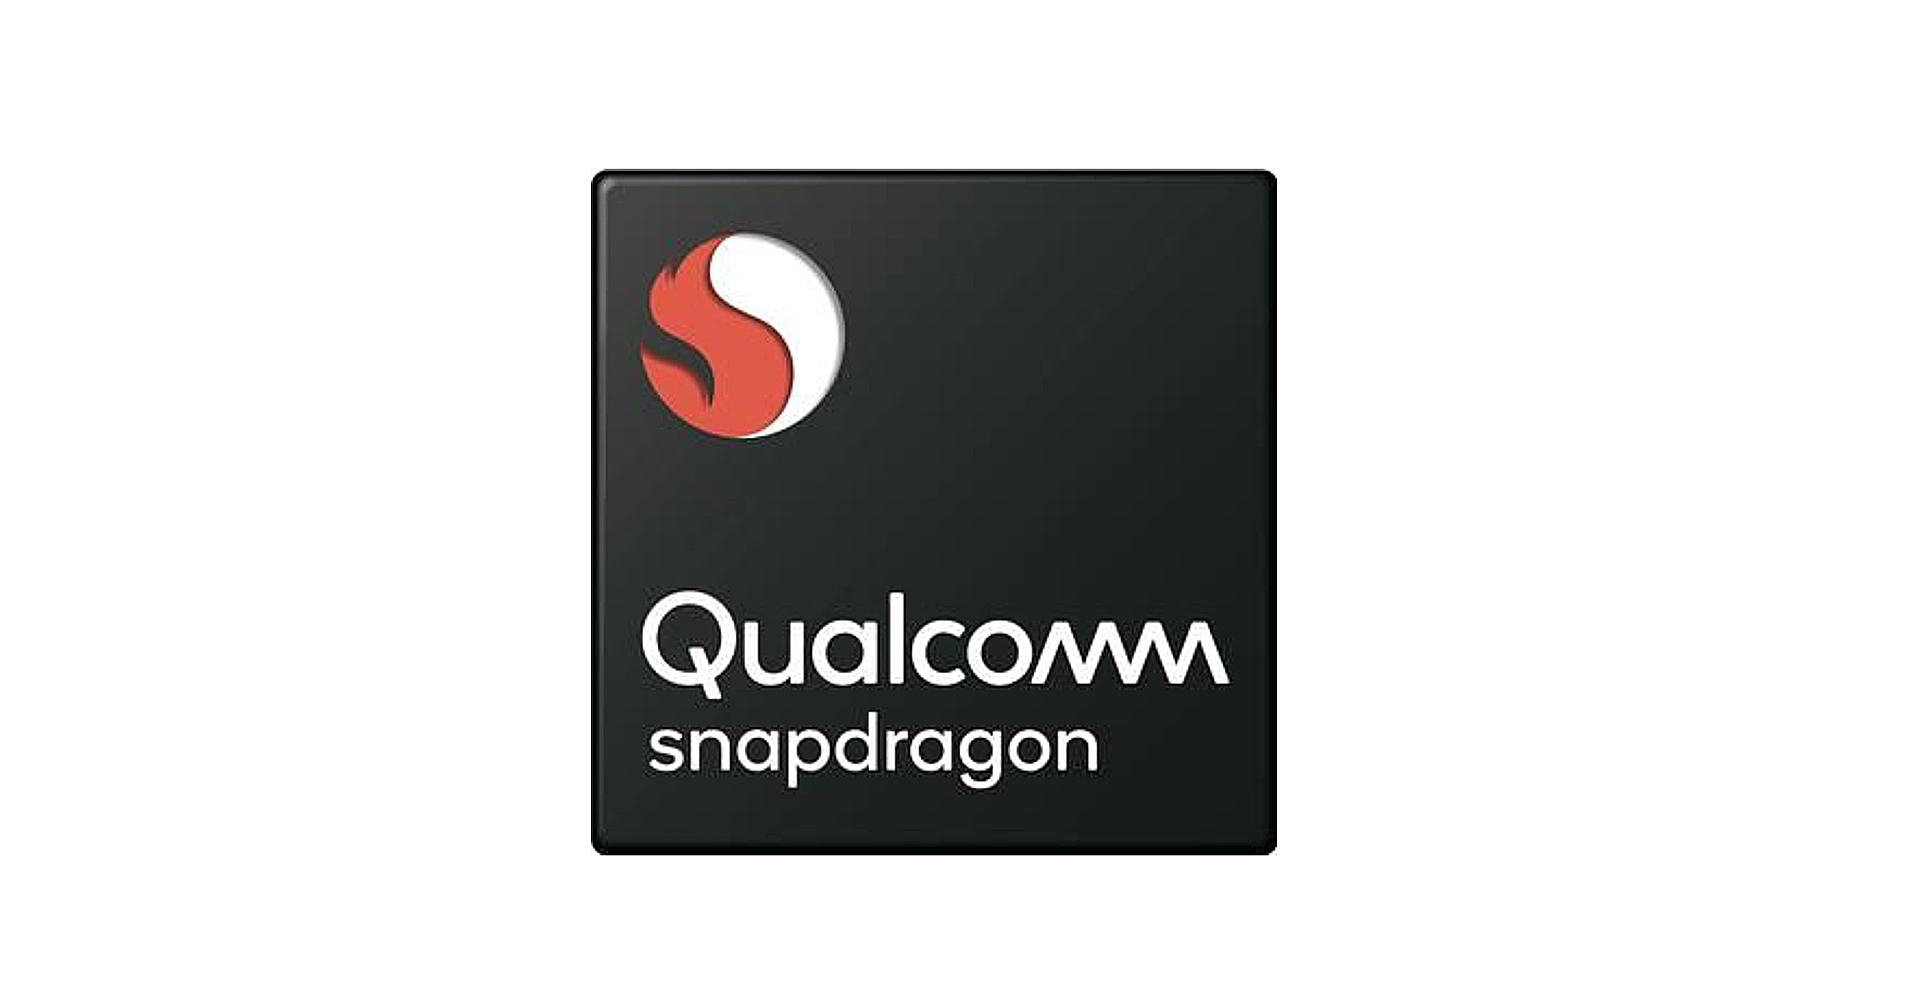 หลุดสเปก Snapdragon 775 : ชิปเซ็ตระดับกลางรุ่นล่าสุดของ Qualcomm